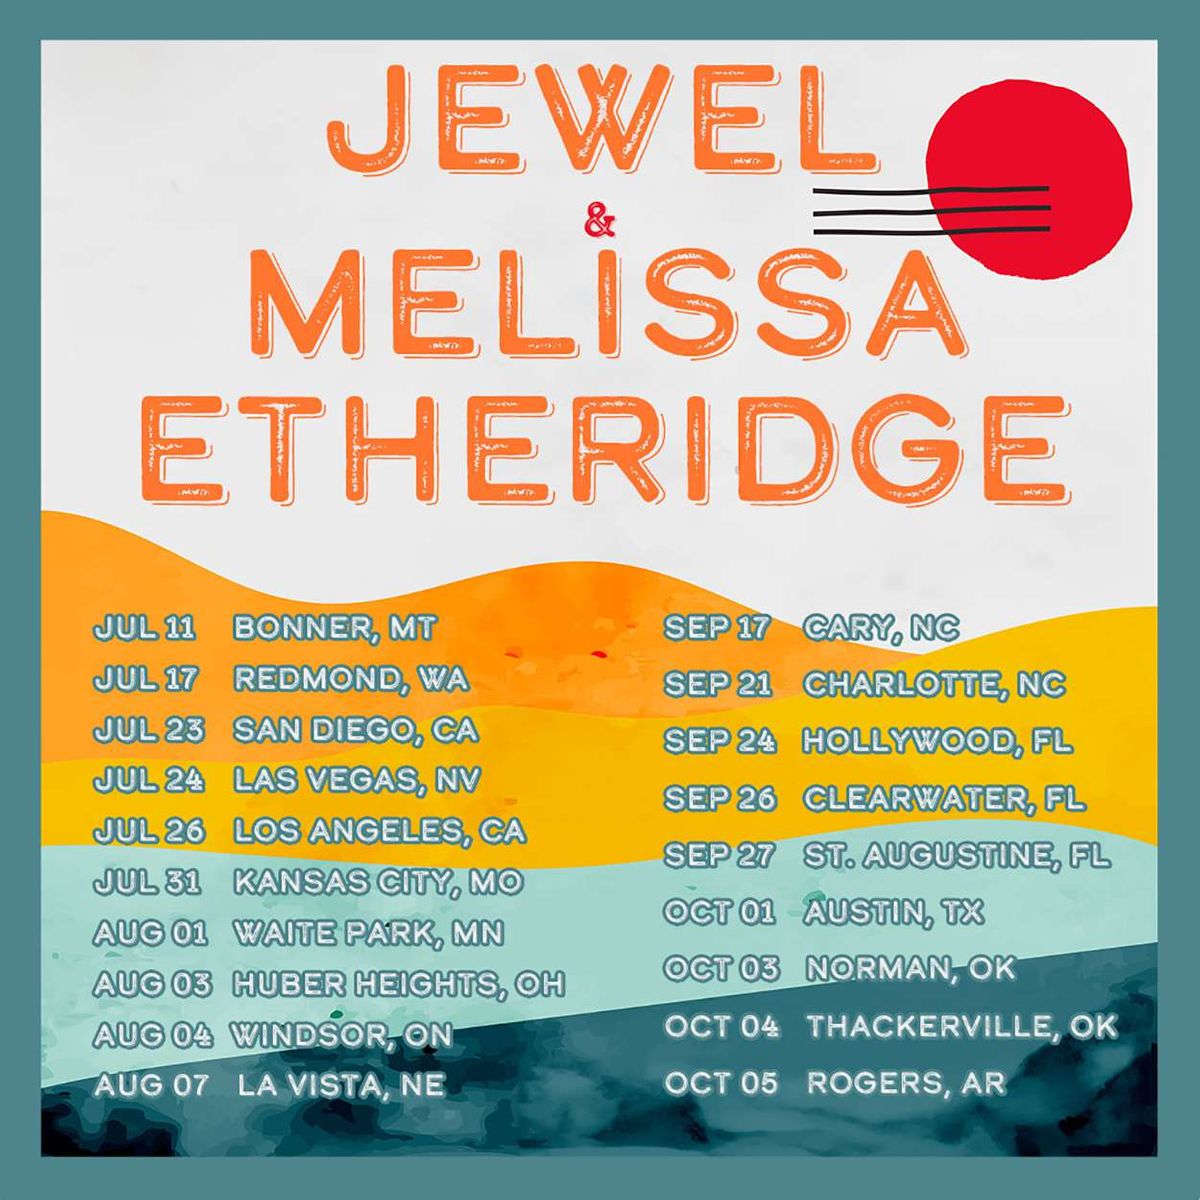 Jewel and Melissa Etheridge